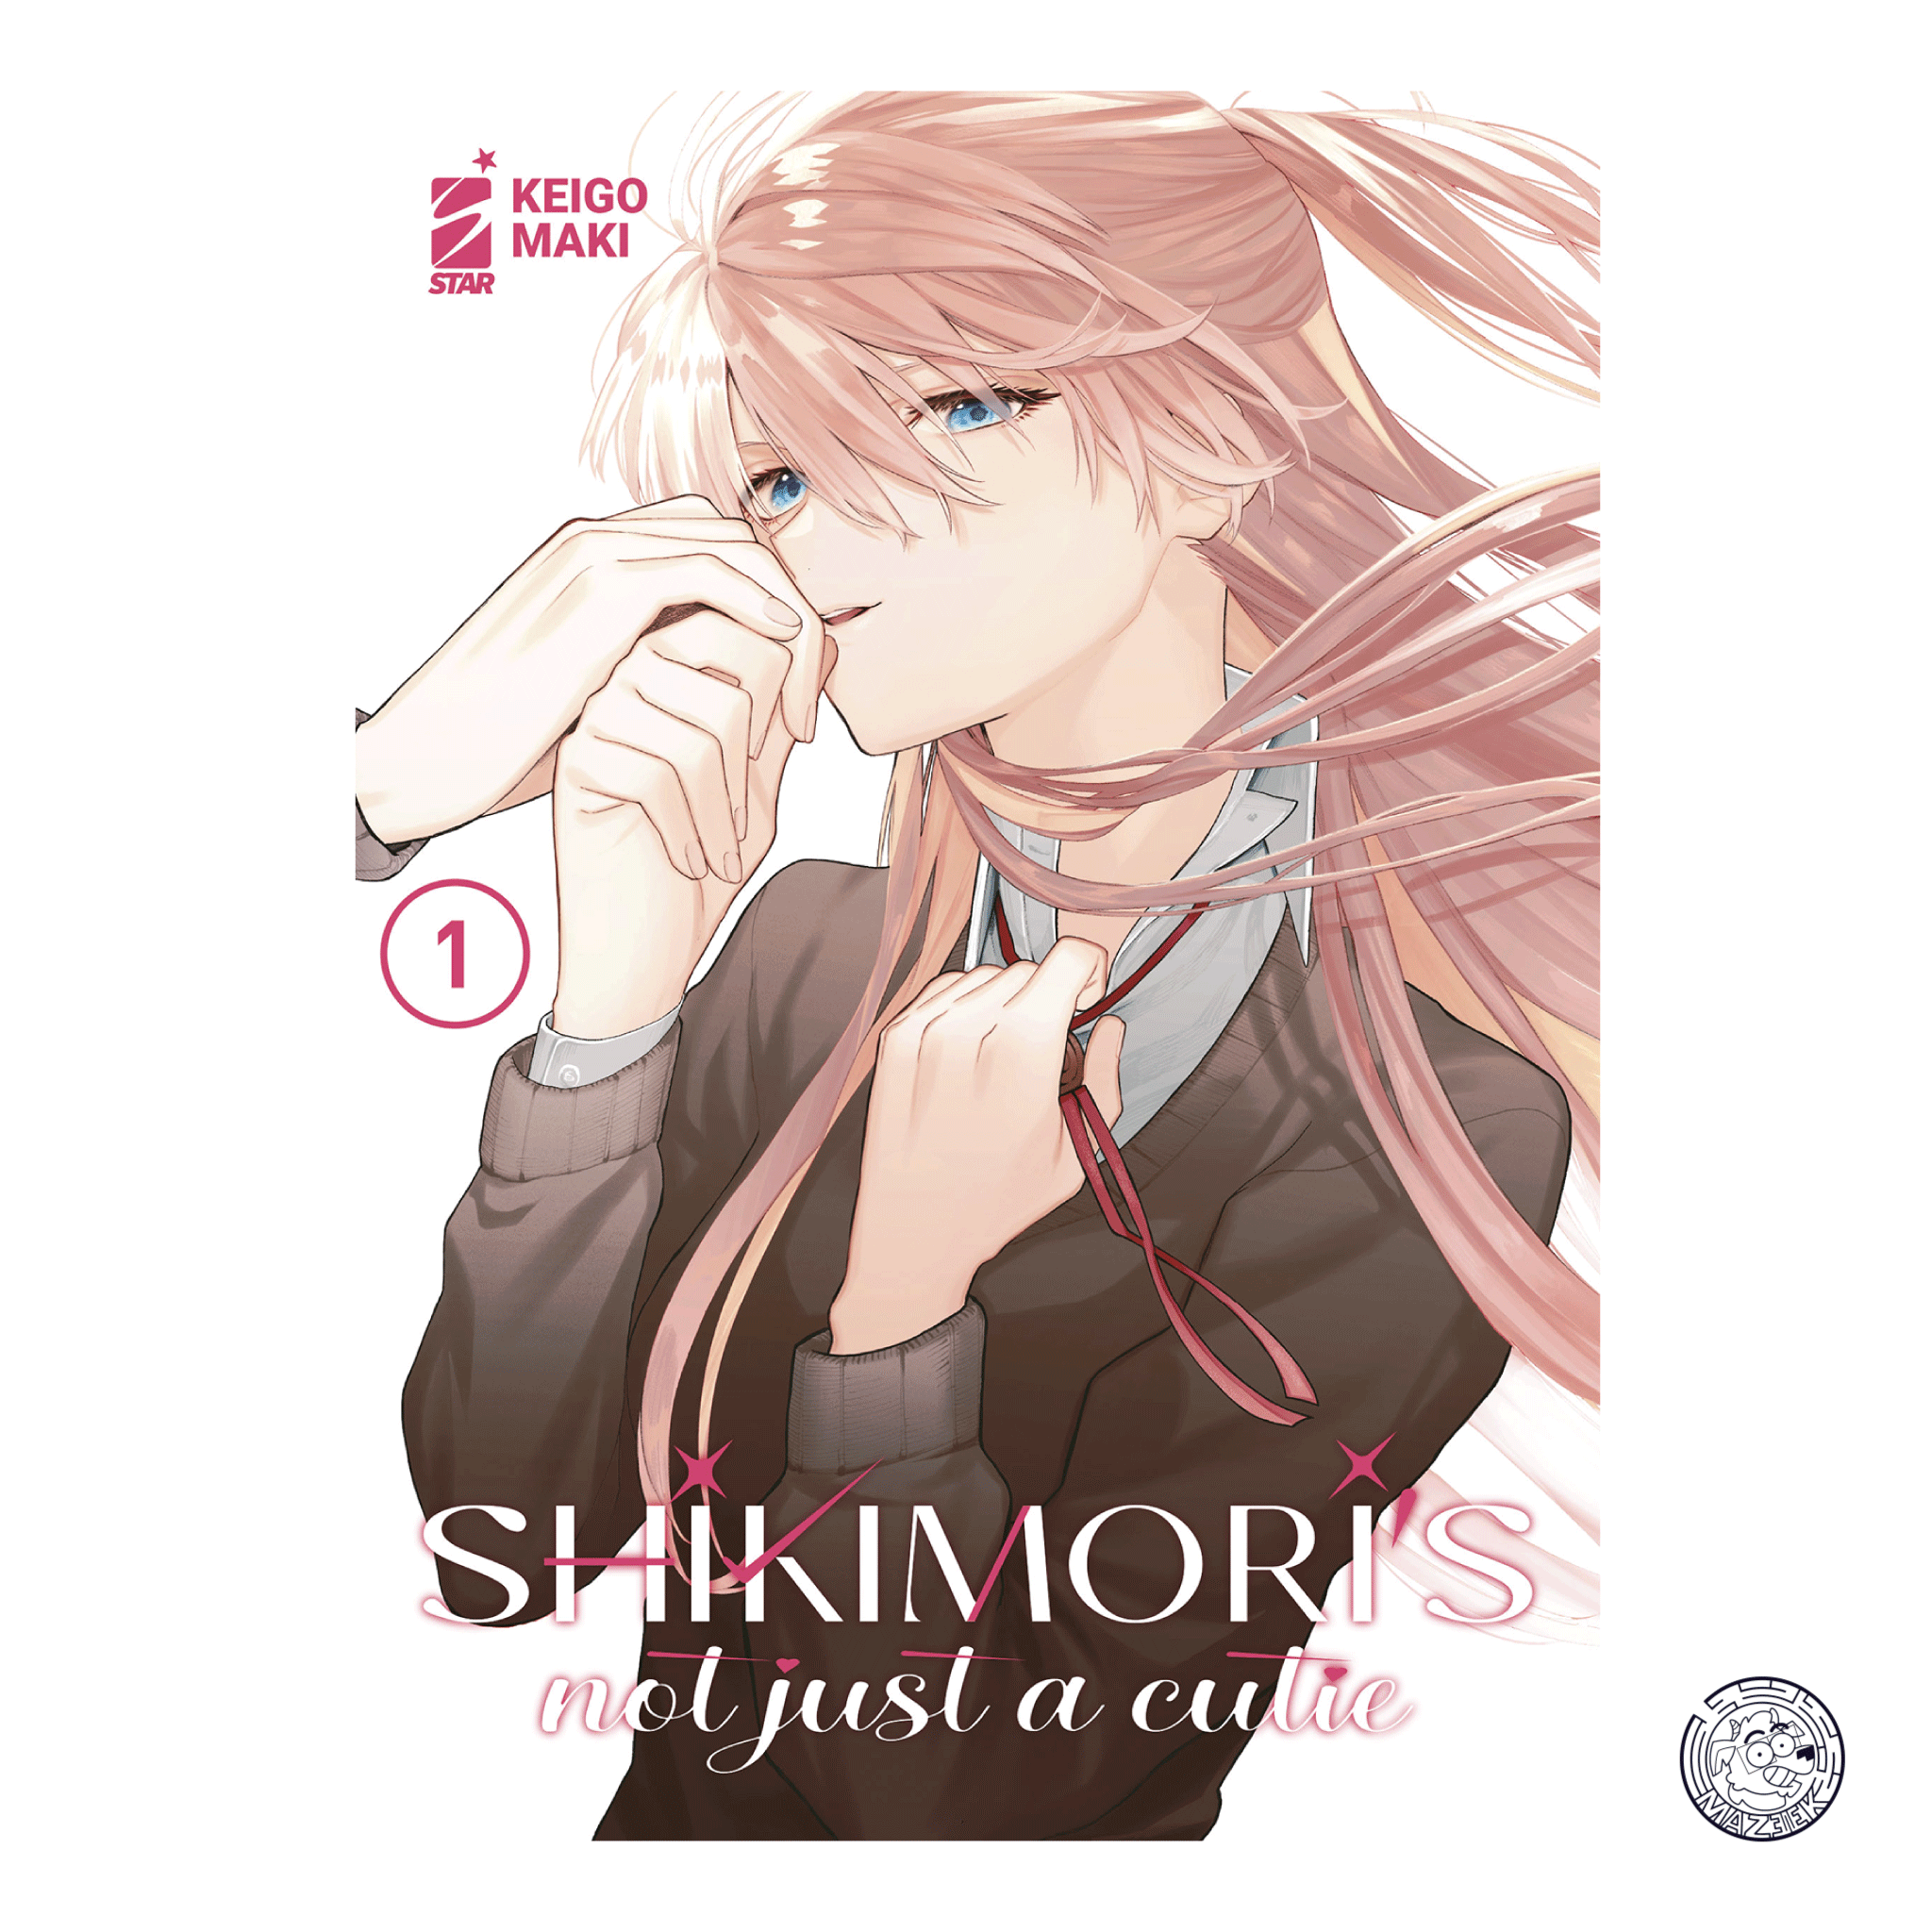 Shikimori's Not Just a Cutie 01